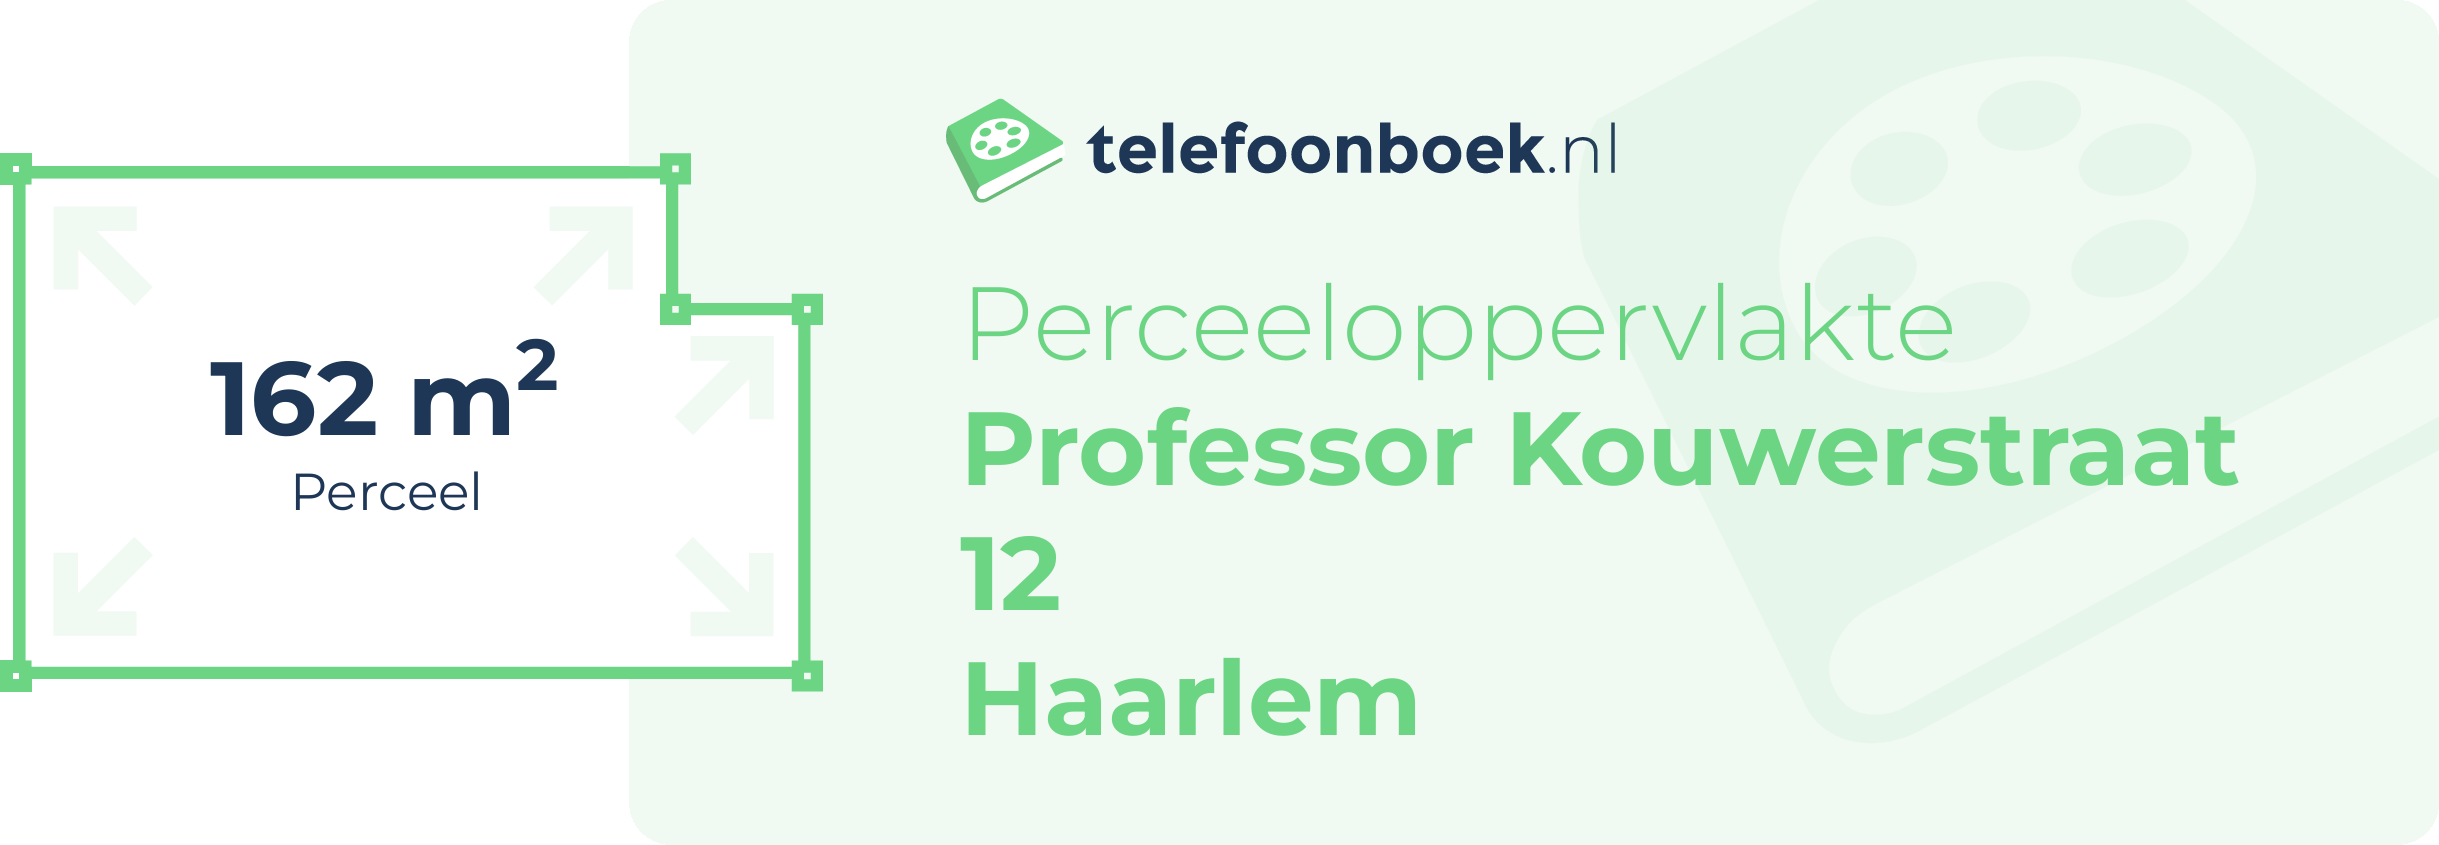 Perceeloppervlakte Professor Kouwerstraat 12 Haarlem